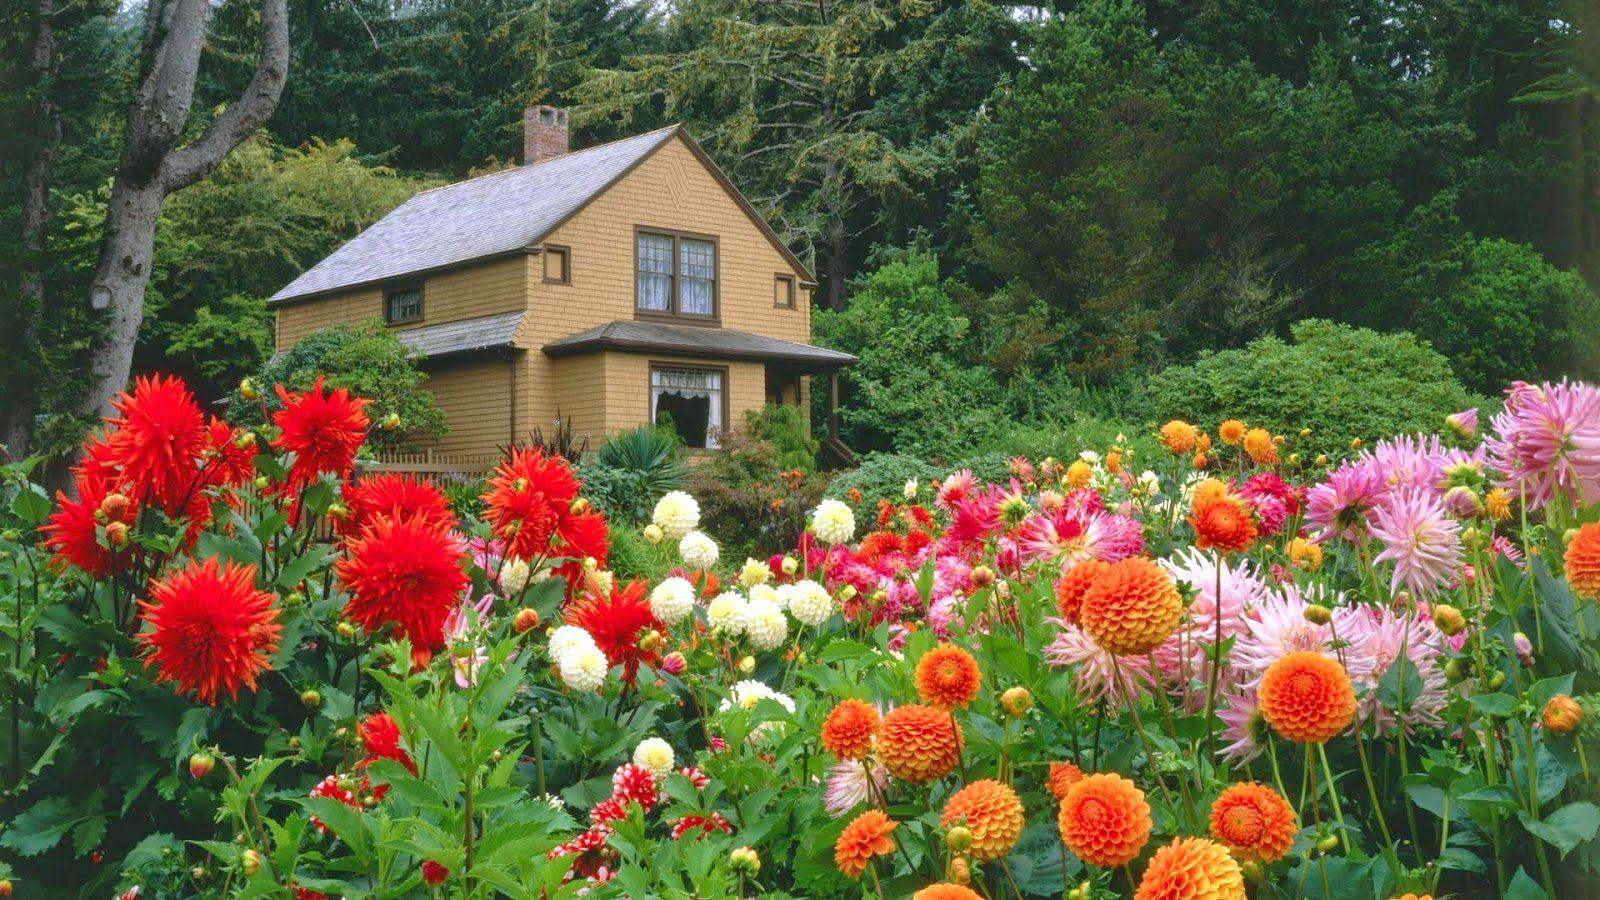 Hình ảnh HD 1600x900 Garden Tải xuống miễn phí Hình nền vườn hoa miễn phí vào năm 2020. Vườn Dahlias, Thiết kế sân vườn, Khu vườn hiện đại